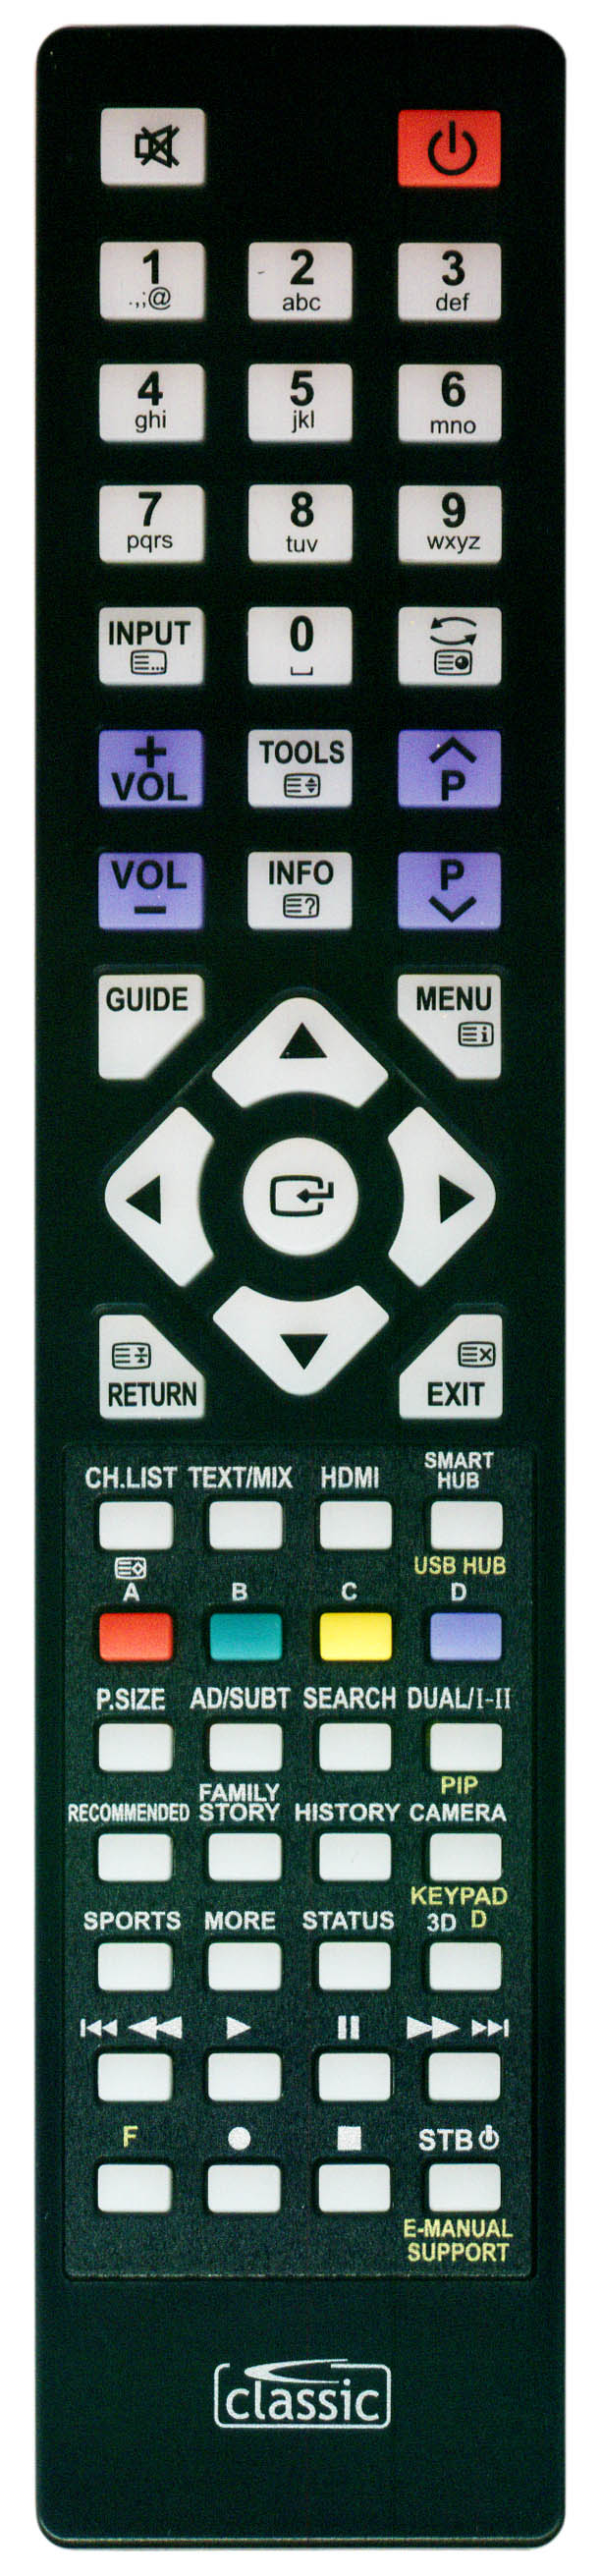 SAMSUNG UE40H6350AK/XRU Remote Control